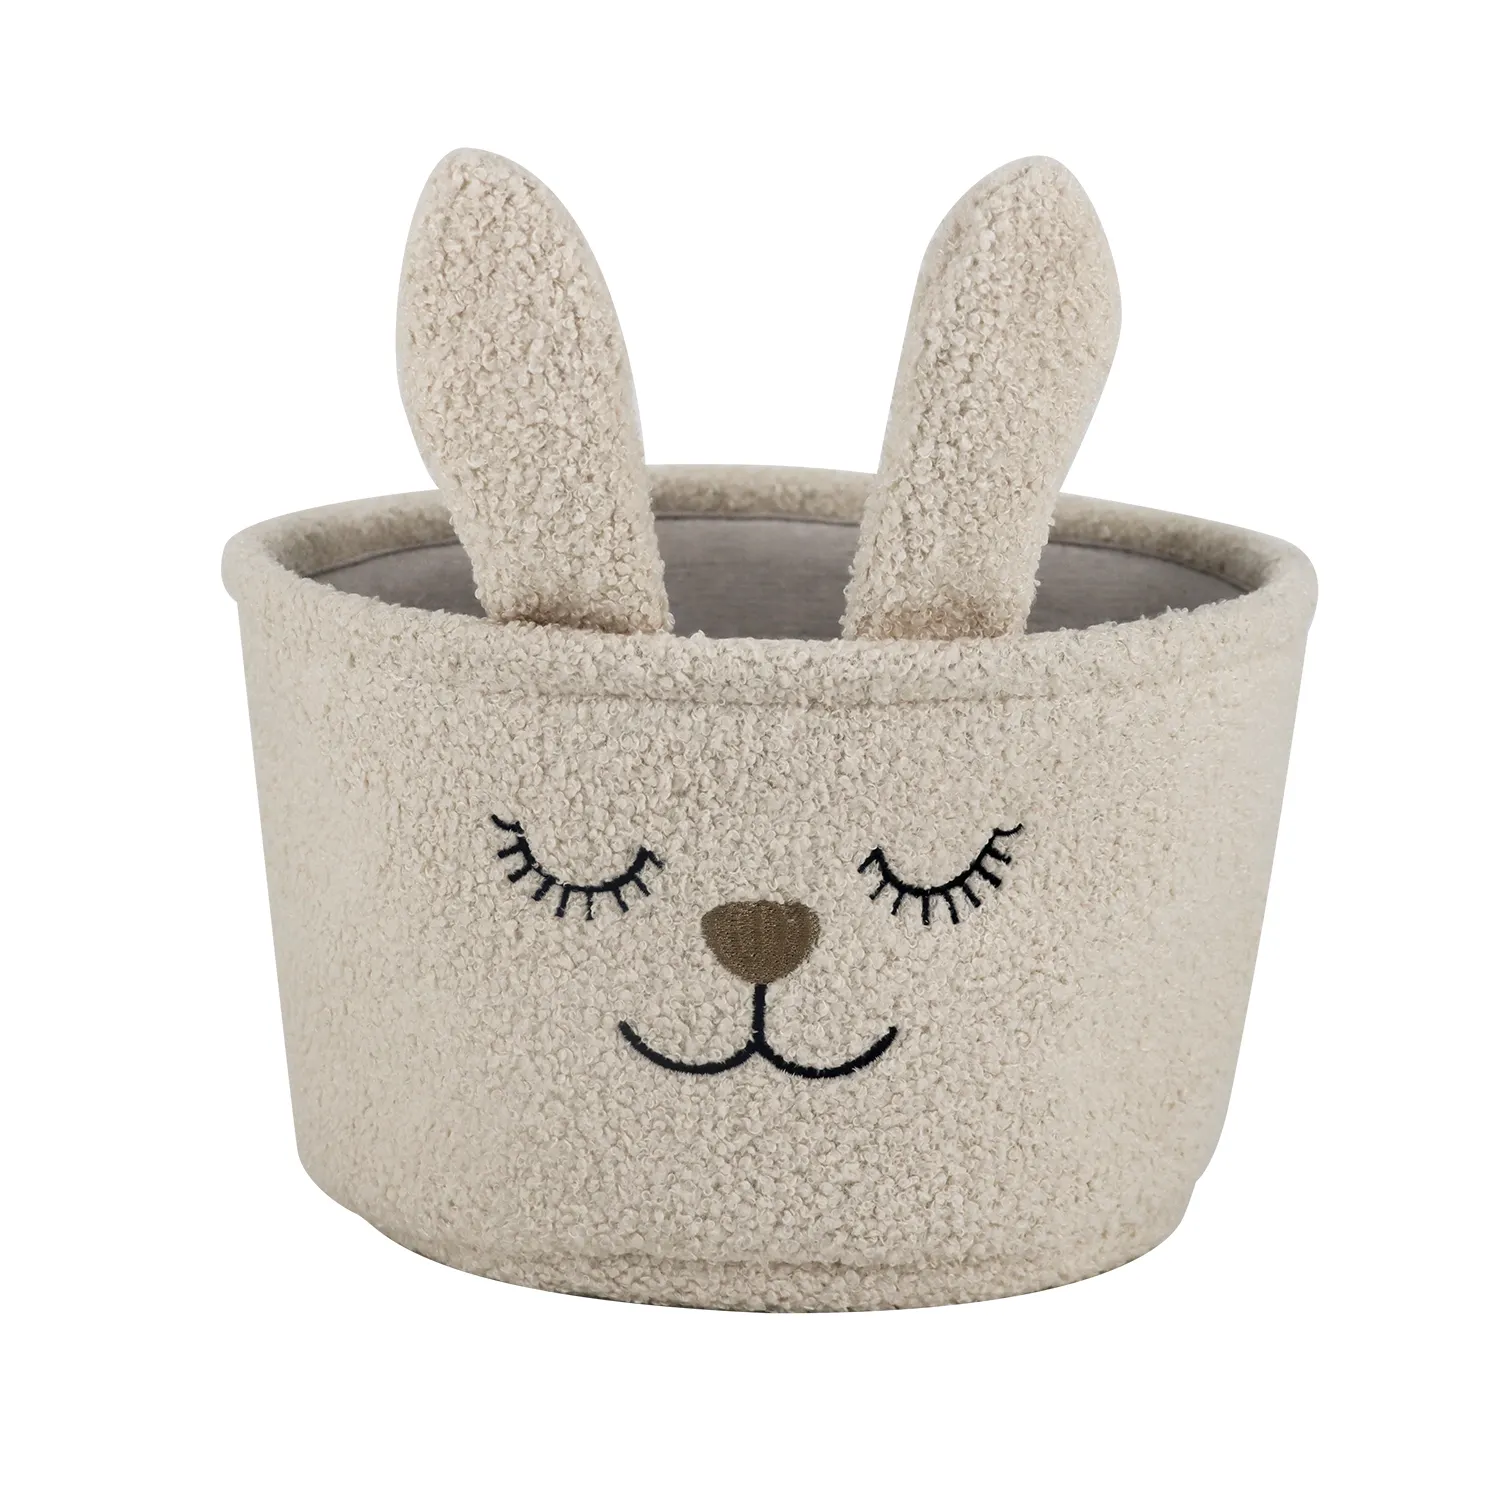 Popular Rabbit embroidery wool basket desktop storage round teddy velvet makeup box organizer beige